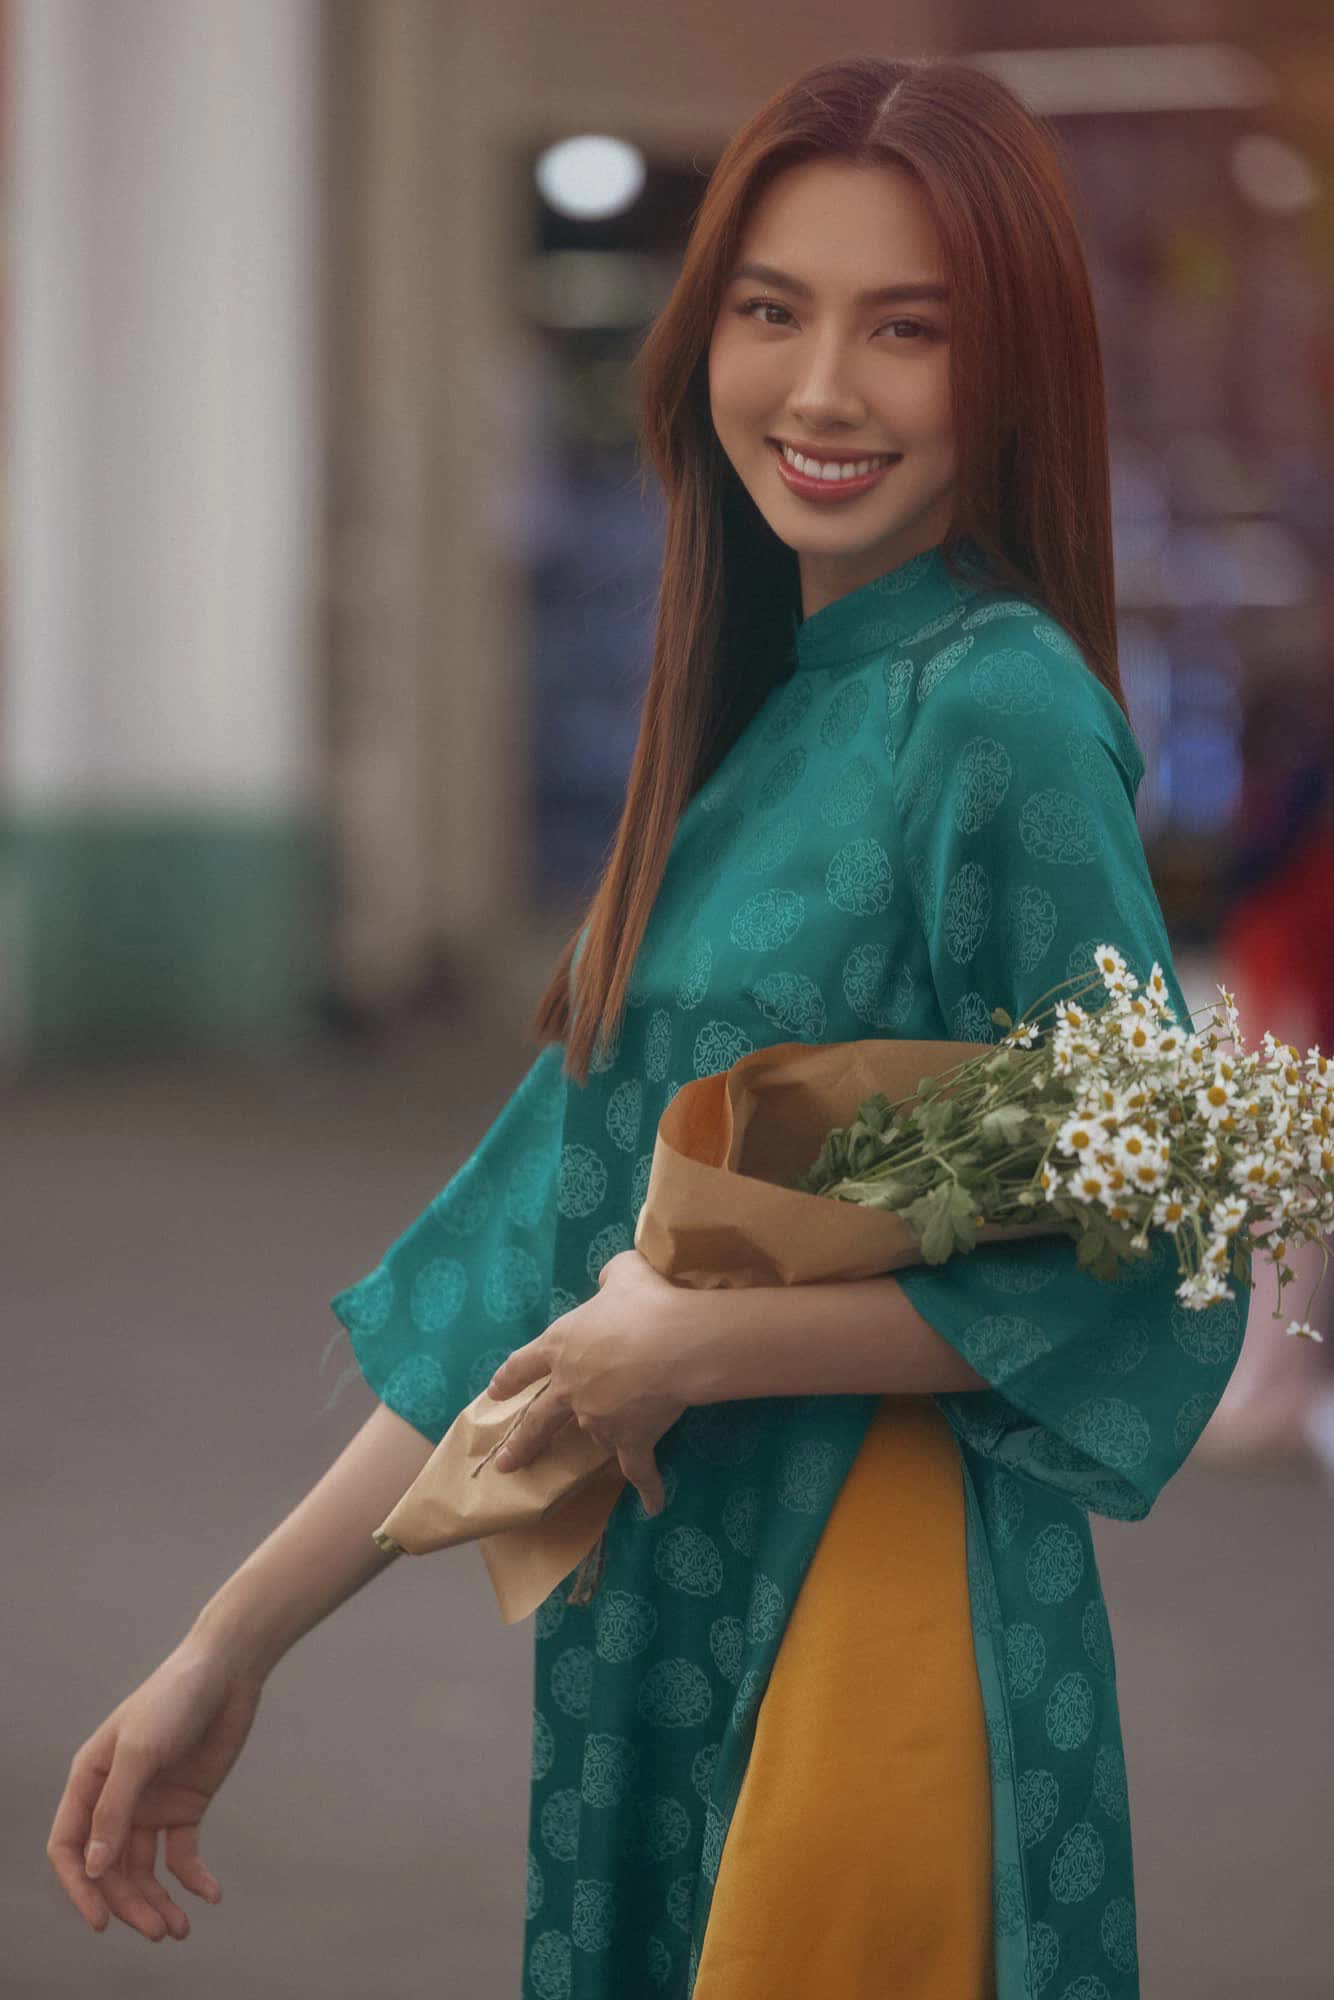 Mê mệt loạt áo dài Tết của Hoa hậu Thủy Tiên: toàn đồ local brand quen mặt, thiết kế điệu đà cứ diện là xinh - Ảnh 2.